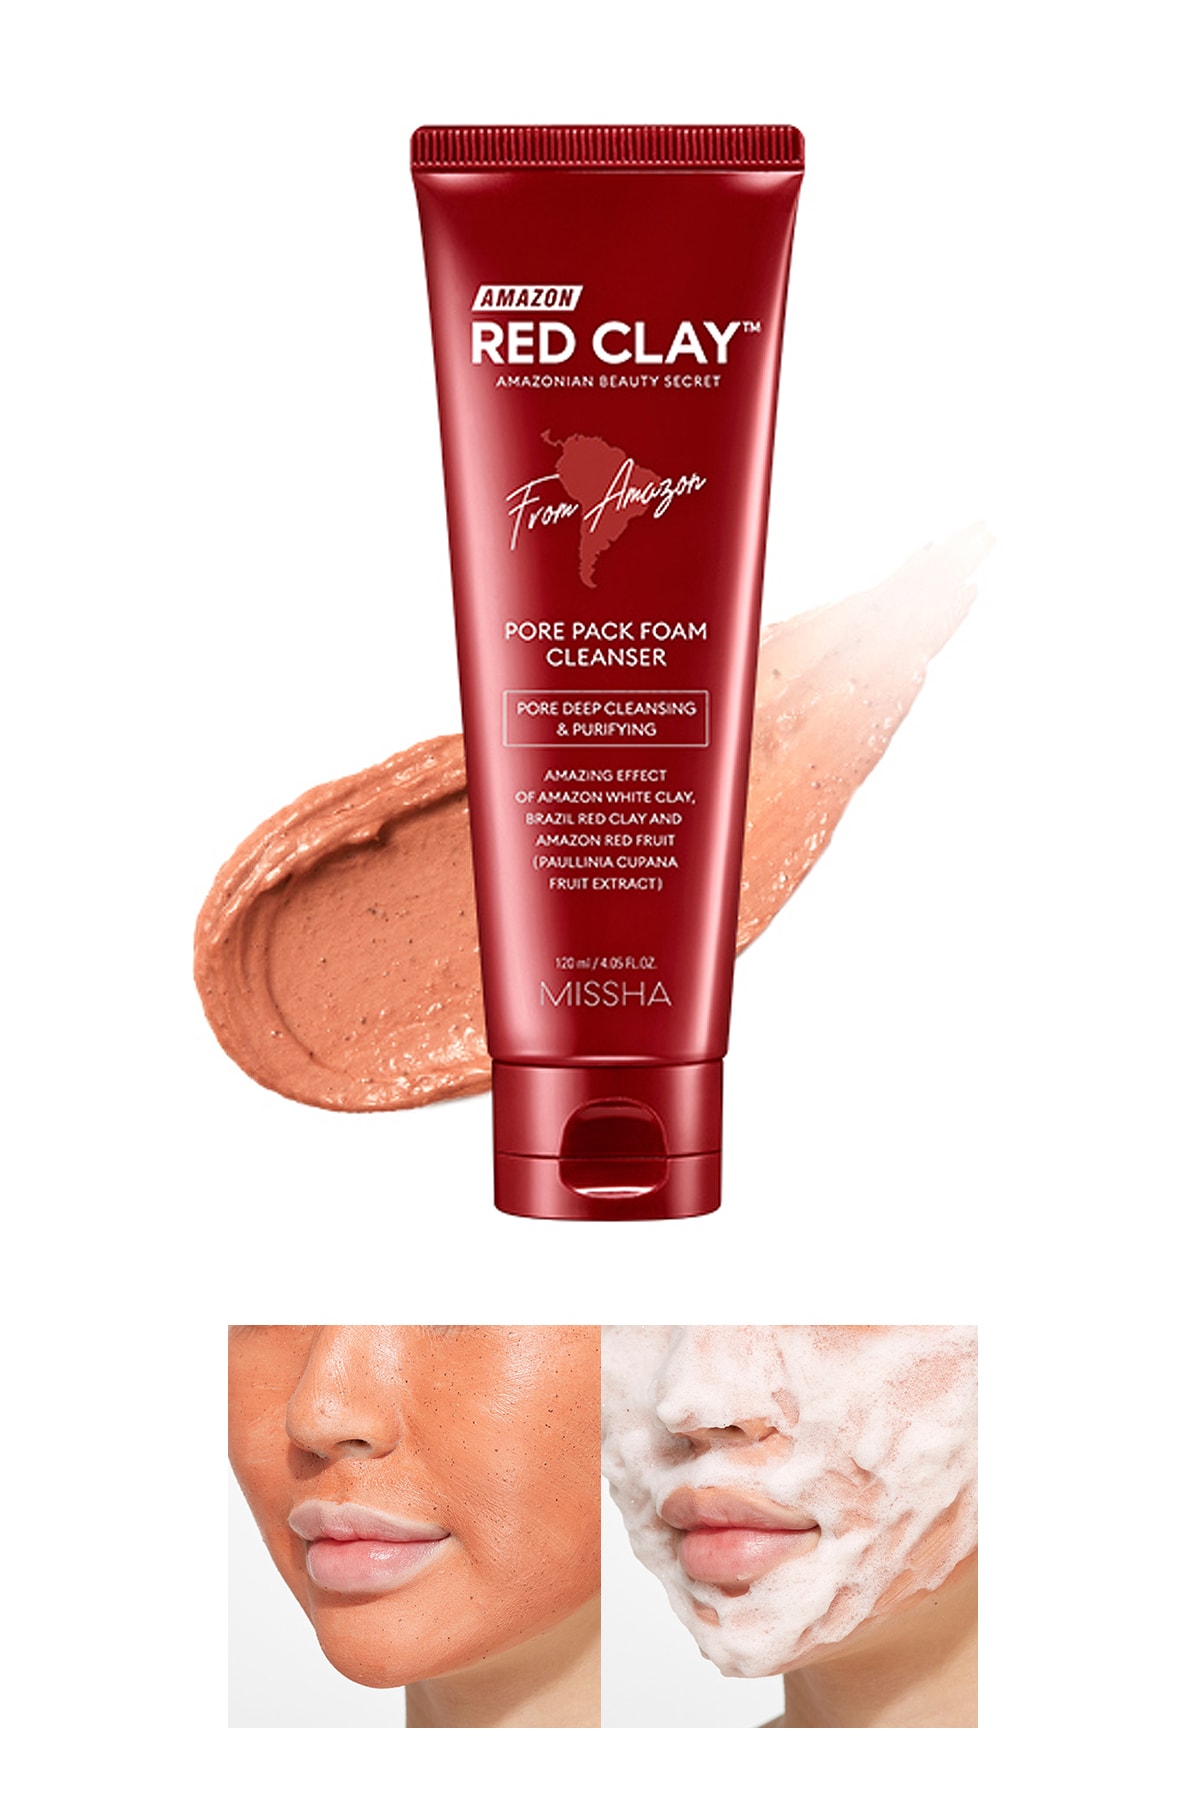 Gözenekli Ciltler İçin Amazon Kili Temizleyici 120ml Amazon Red Clay Pore Pack Foam Cleanser